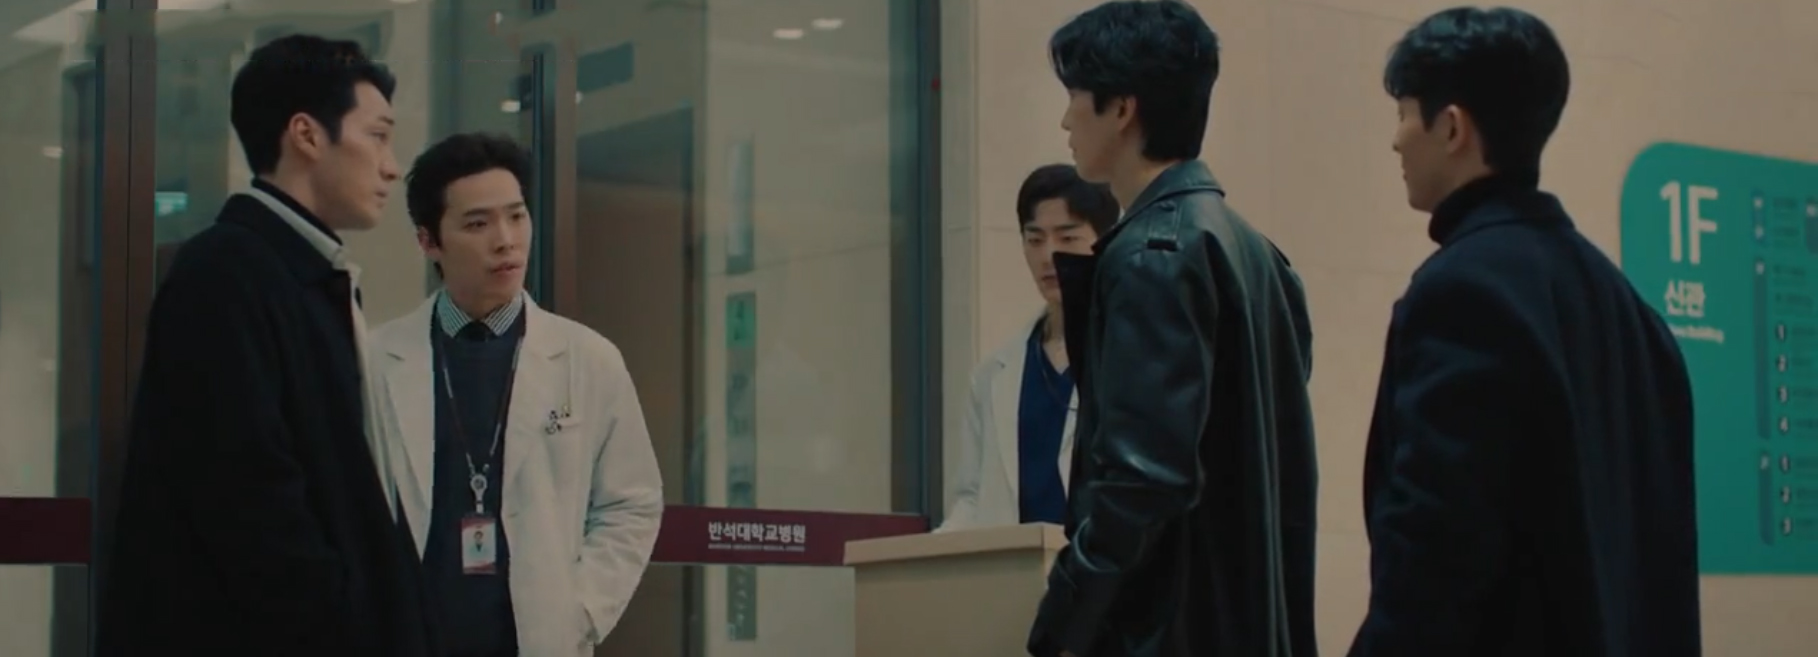 Bác sĩ luật sư: So Ji Sub chung chiến tuyến với bạn gái cũ, lạnh người trước sự nhẫn tâm của trùm phản diện - Ảnh 5.